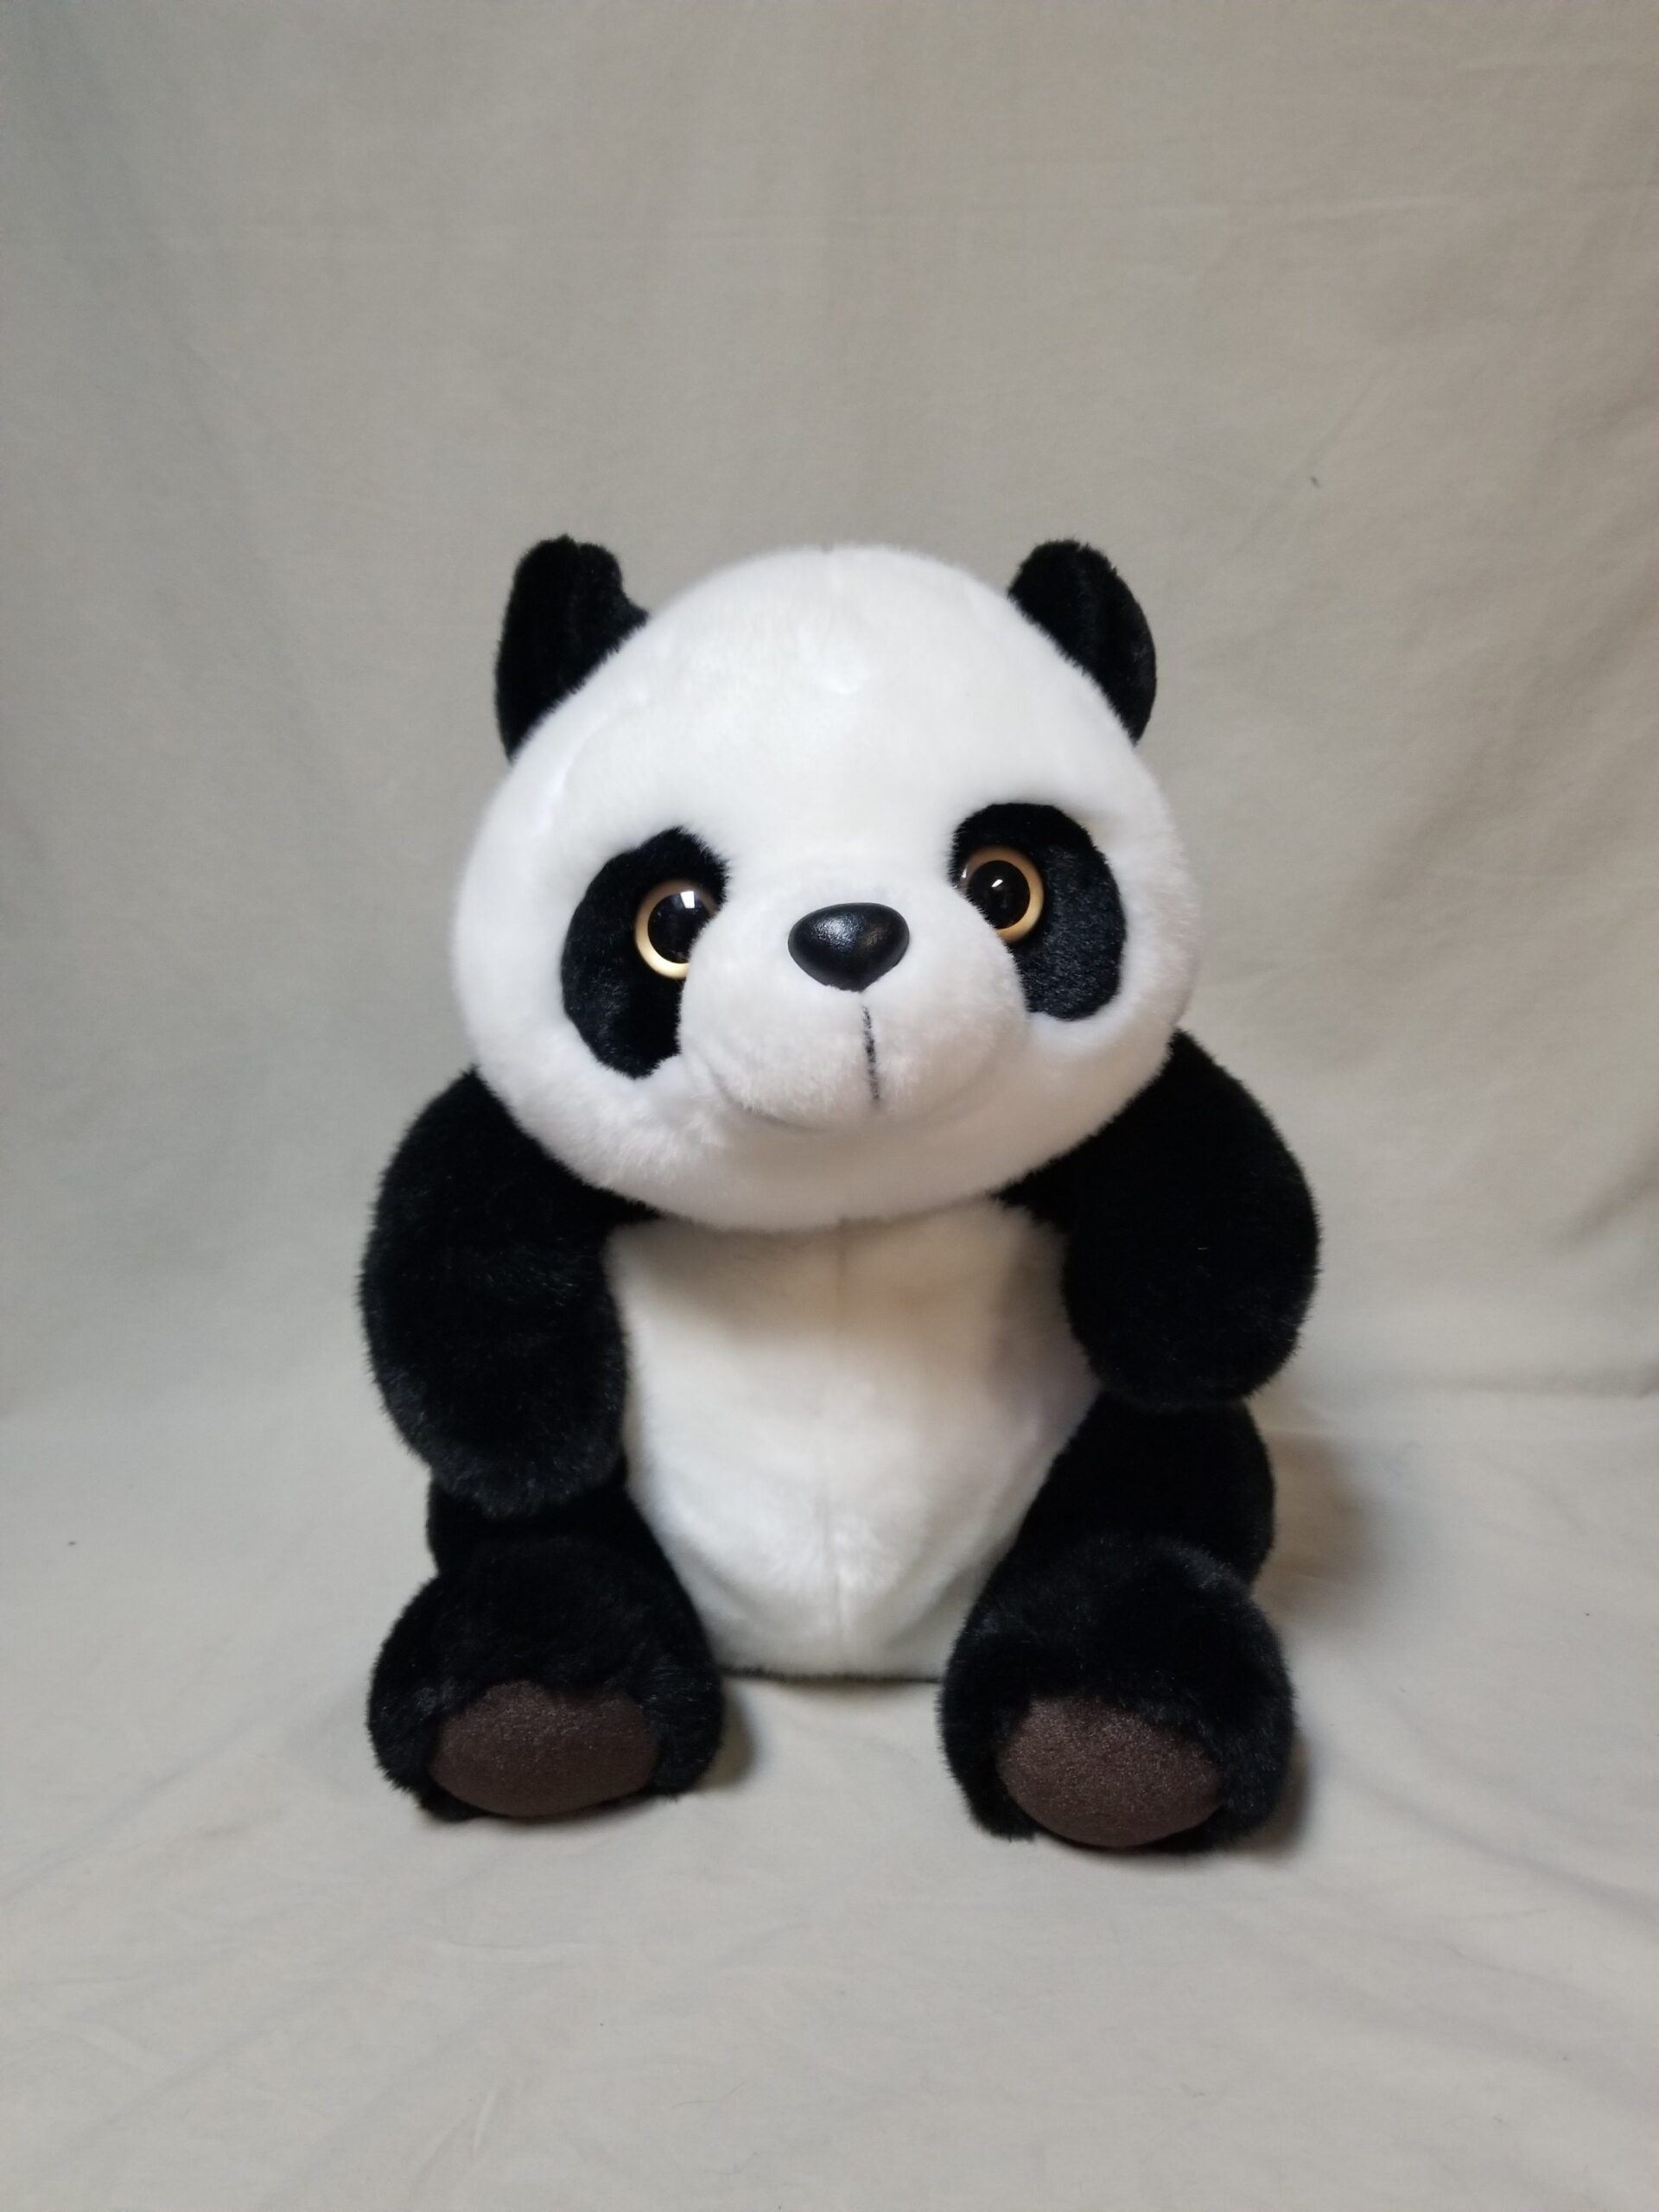 Toy plush panda